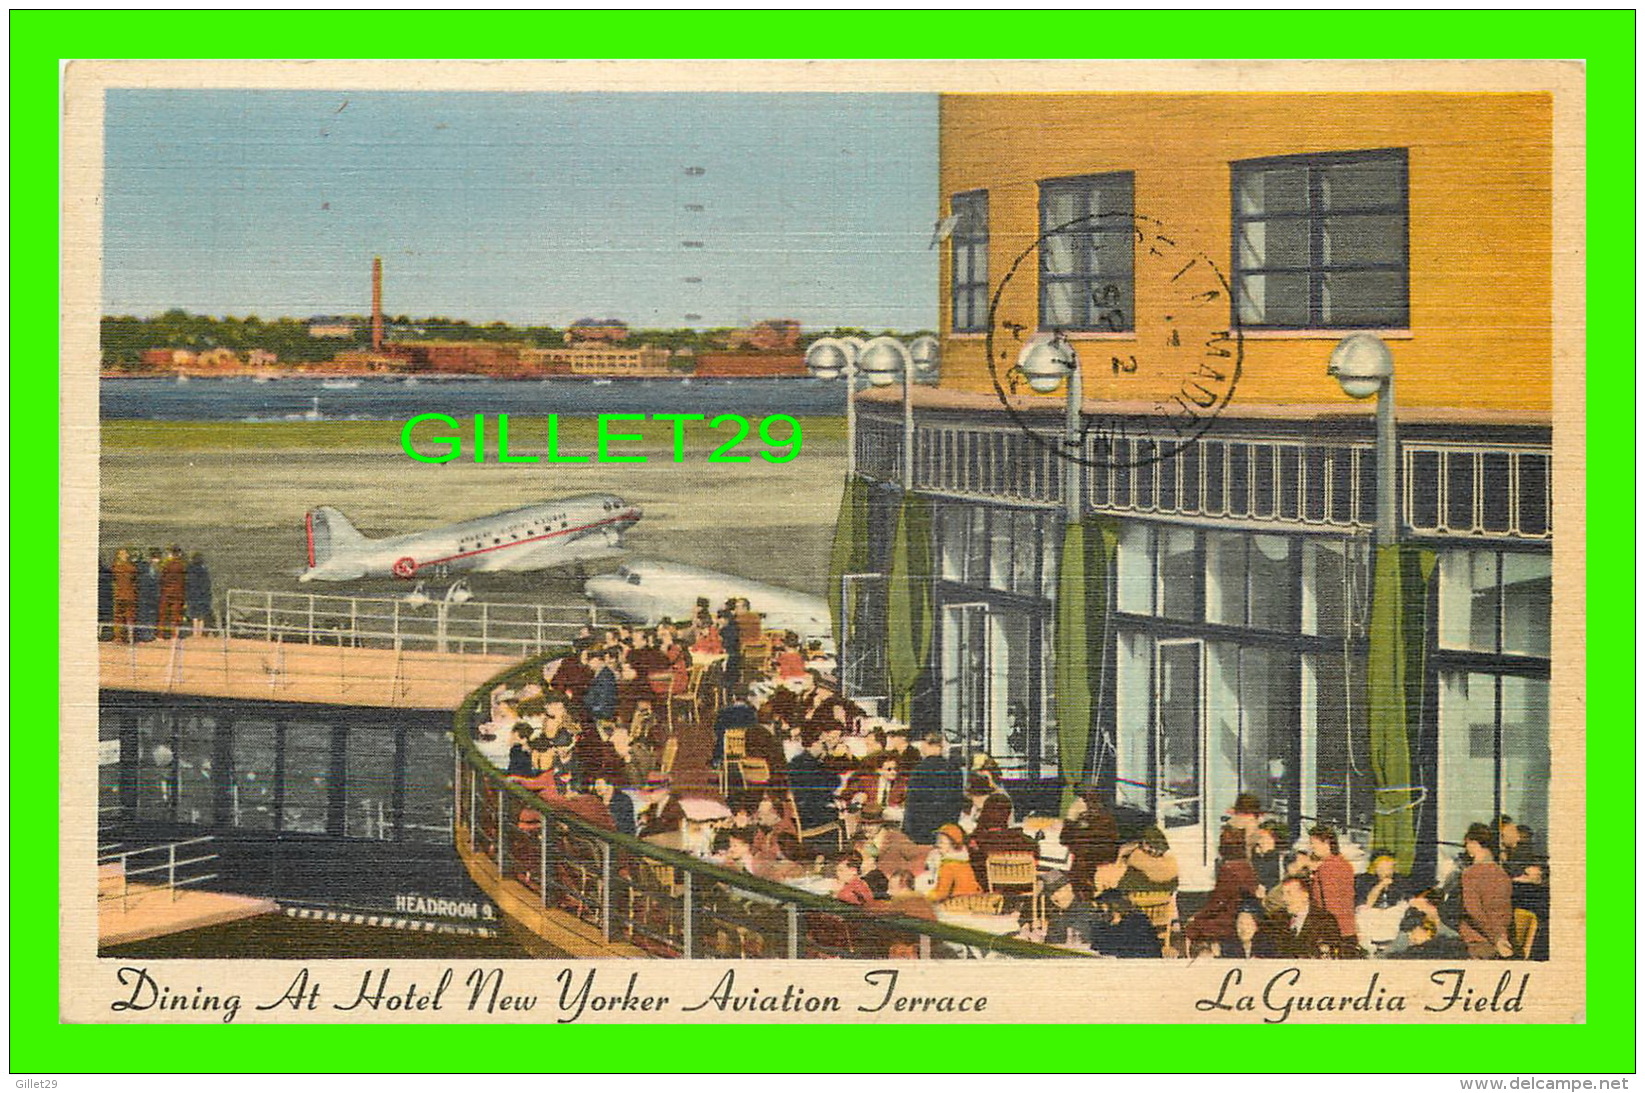 LA GUARDIA FIELD, NY - DINING AT HOTEL NEW YORKER AVIATION TERRACE - TRAVEL IN 1947 - - Aeroporti